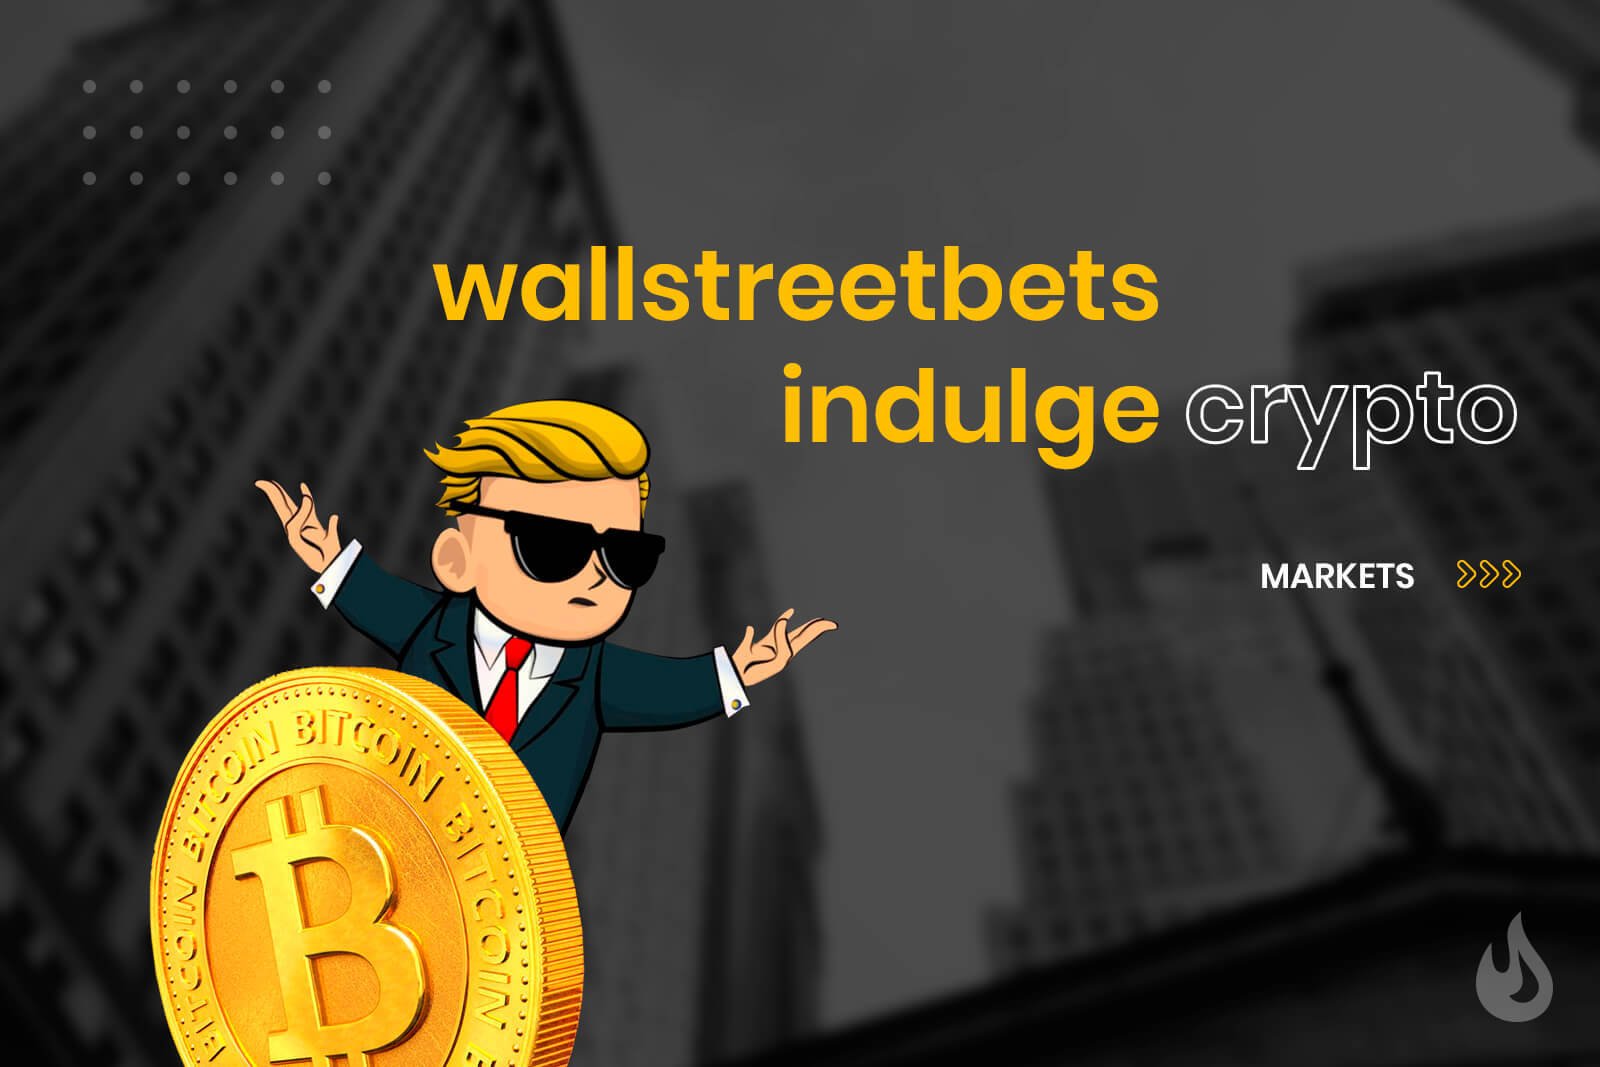 Wall street bets crypto 142 bitcoin